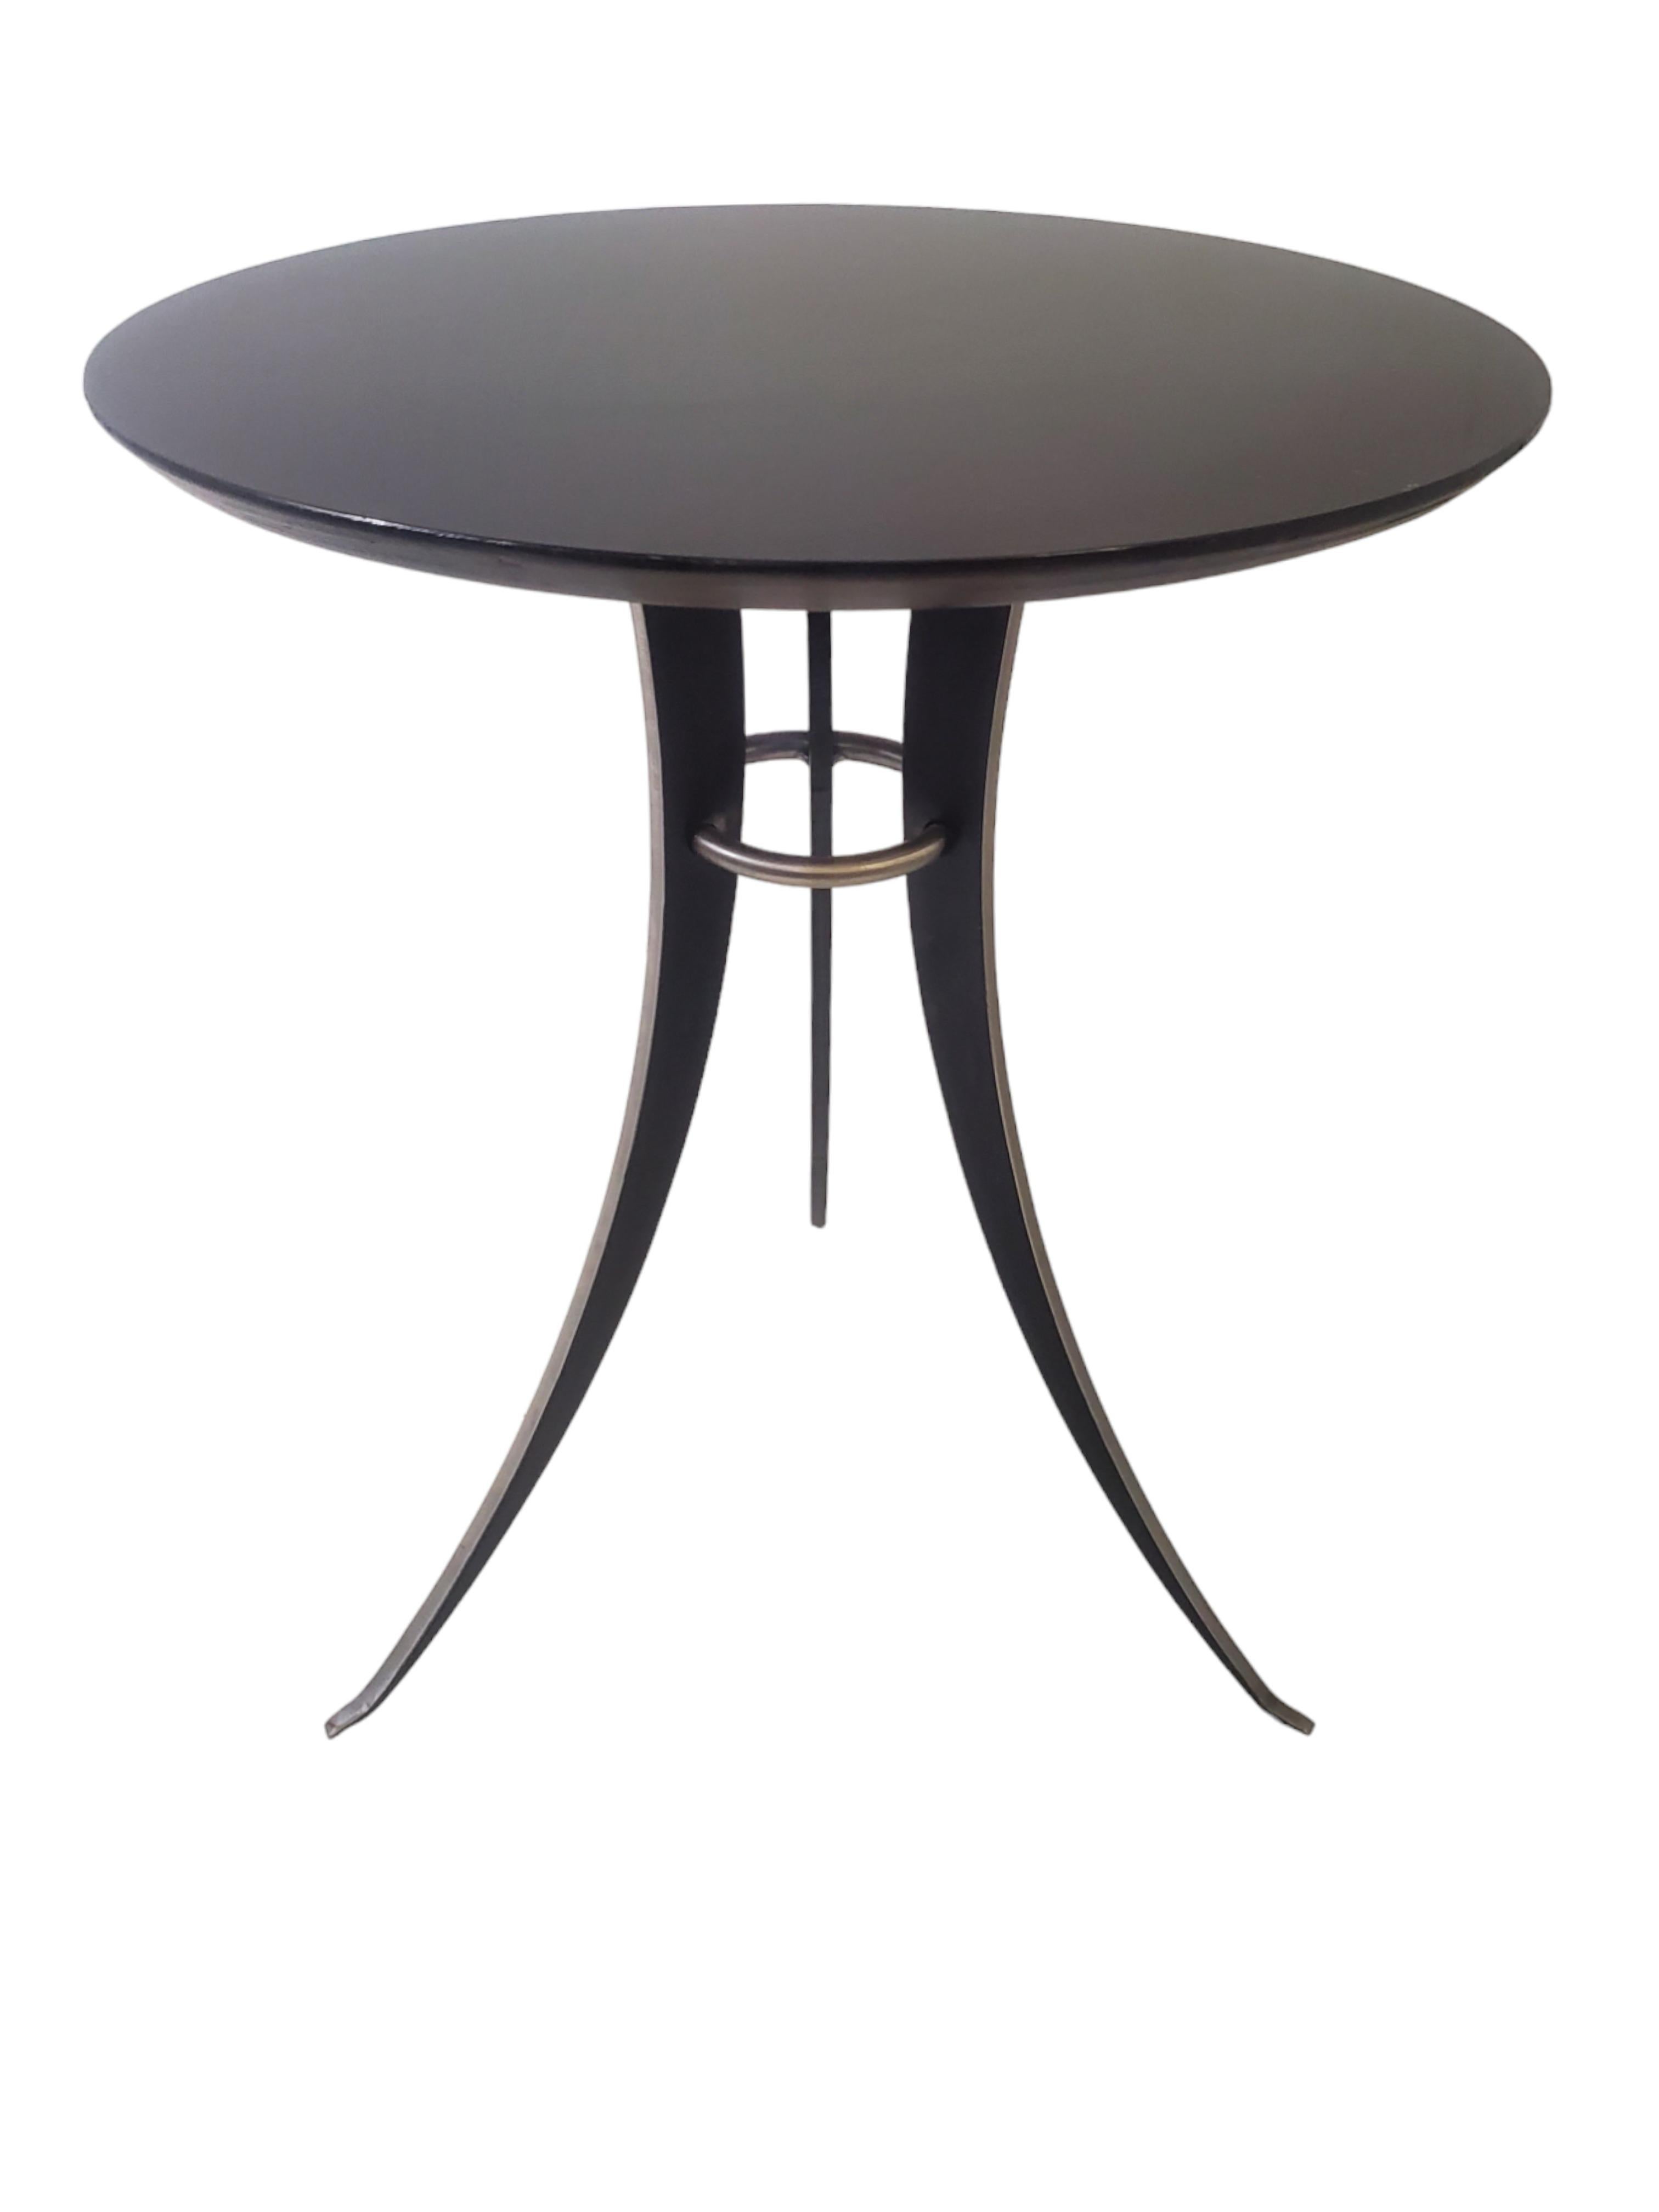 ( Une paire est disponible ) 
Un minimaliste  Table d'appoint à pied évasé en acier et bois laqué dans le style d'Osvaldo Borsani et au design tulipe de la modernité du milieu du siècle dernier.
Le design austère et épuré rend cette table attrayante